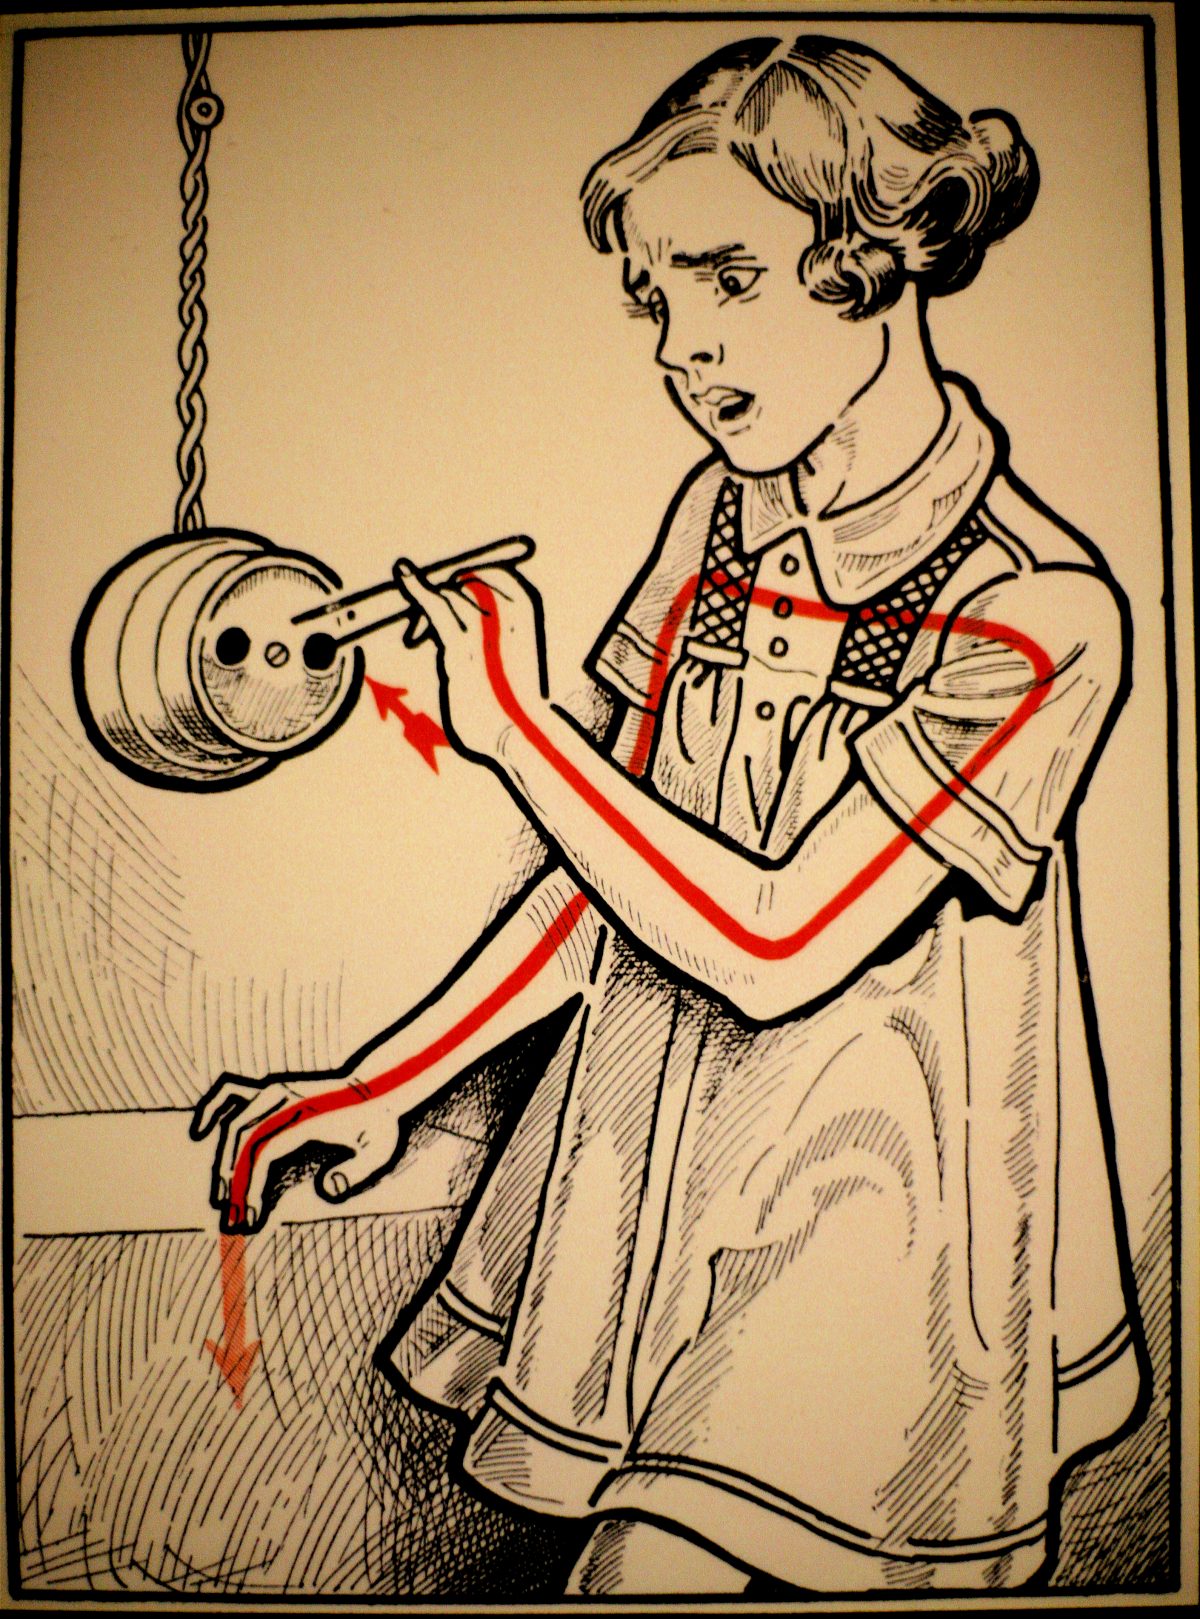 Elektroschutz in 132 Bildern’ (Electrical Protection in 132 Pictures) by Viennese physician Stefan Jellinek (1878-1968)